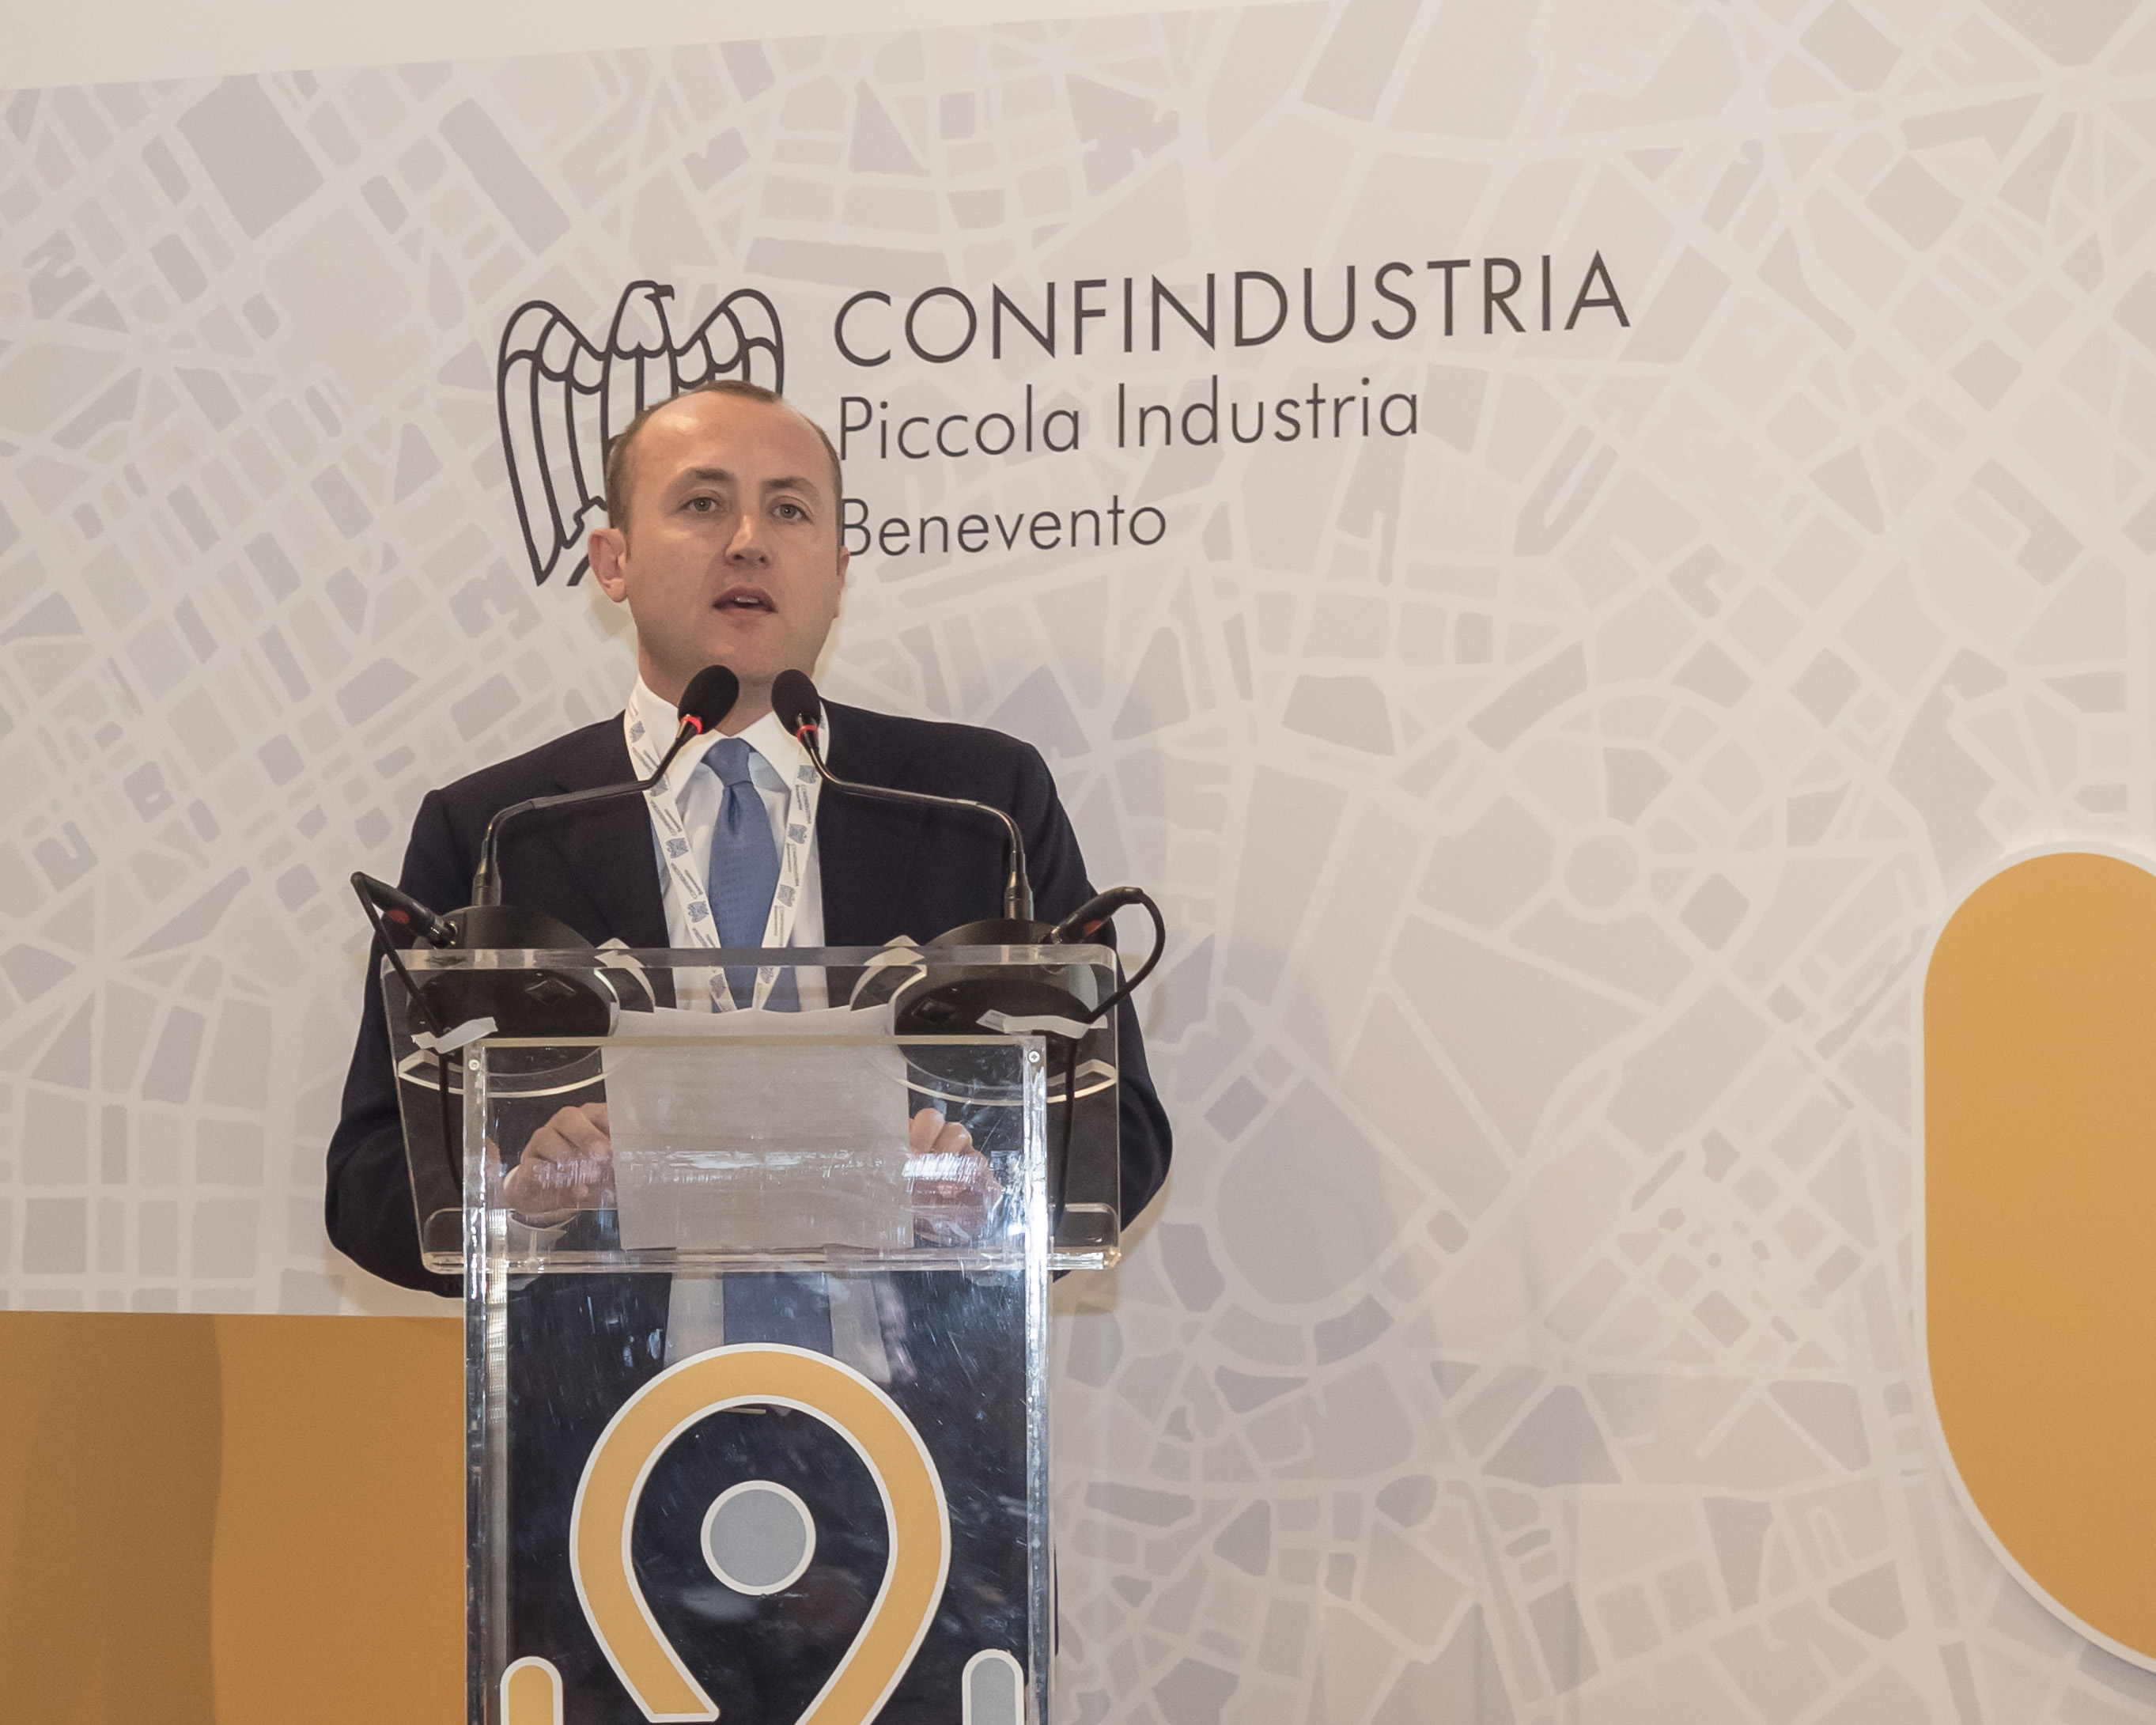 Benevento| “Legge di Bilancio 2019, le novità di interesse per le imprese e gli strumenti per la crescita” : seminario a Confidustria